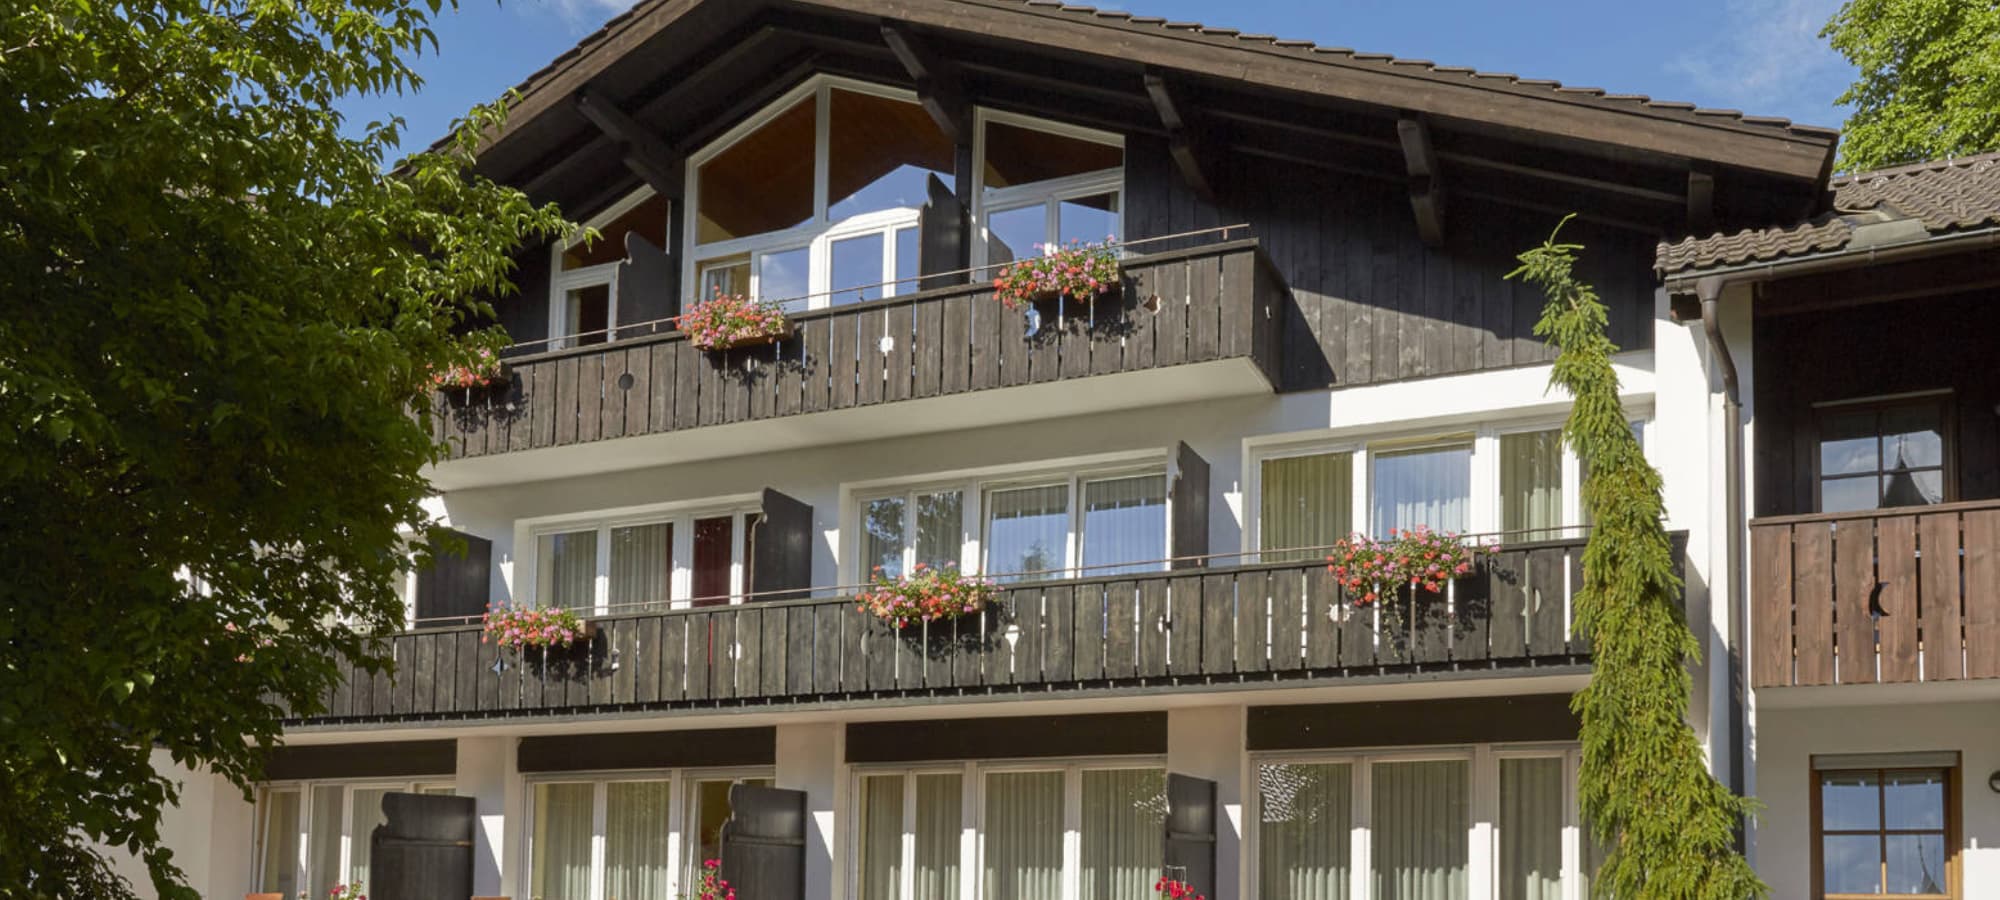 The Hyperion Hotel Garmisch-Partenkirchen